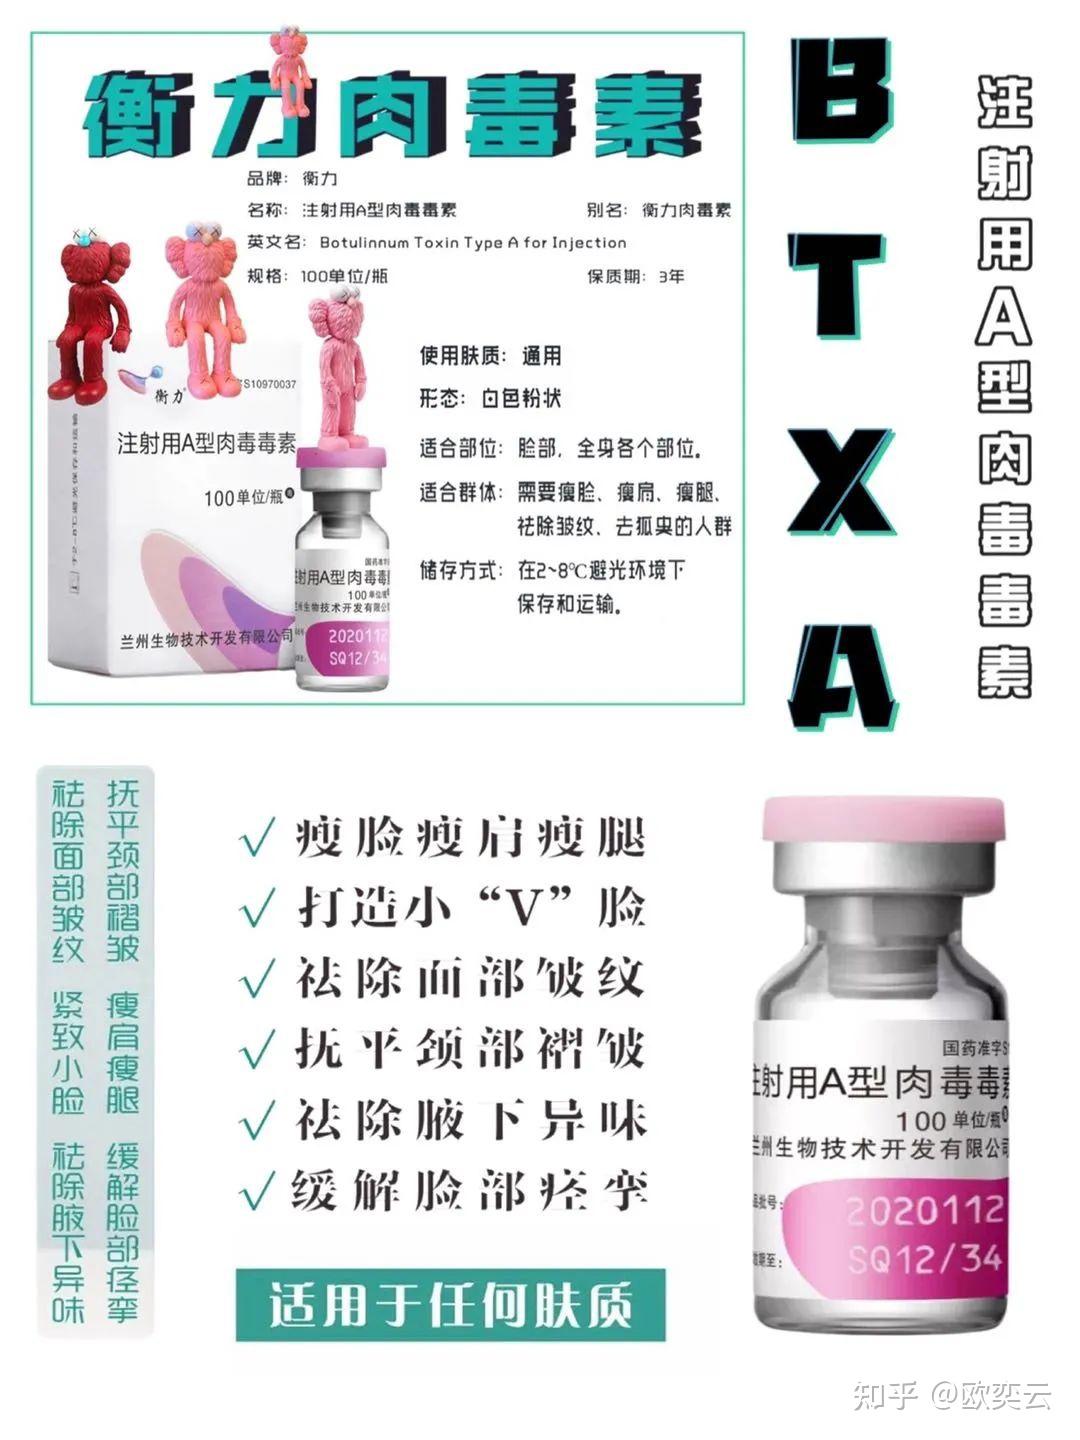 注射用A型肉毒毒素-乐提葆Letybo-三正规医美平台-中国整形美容协会